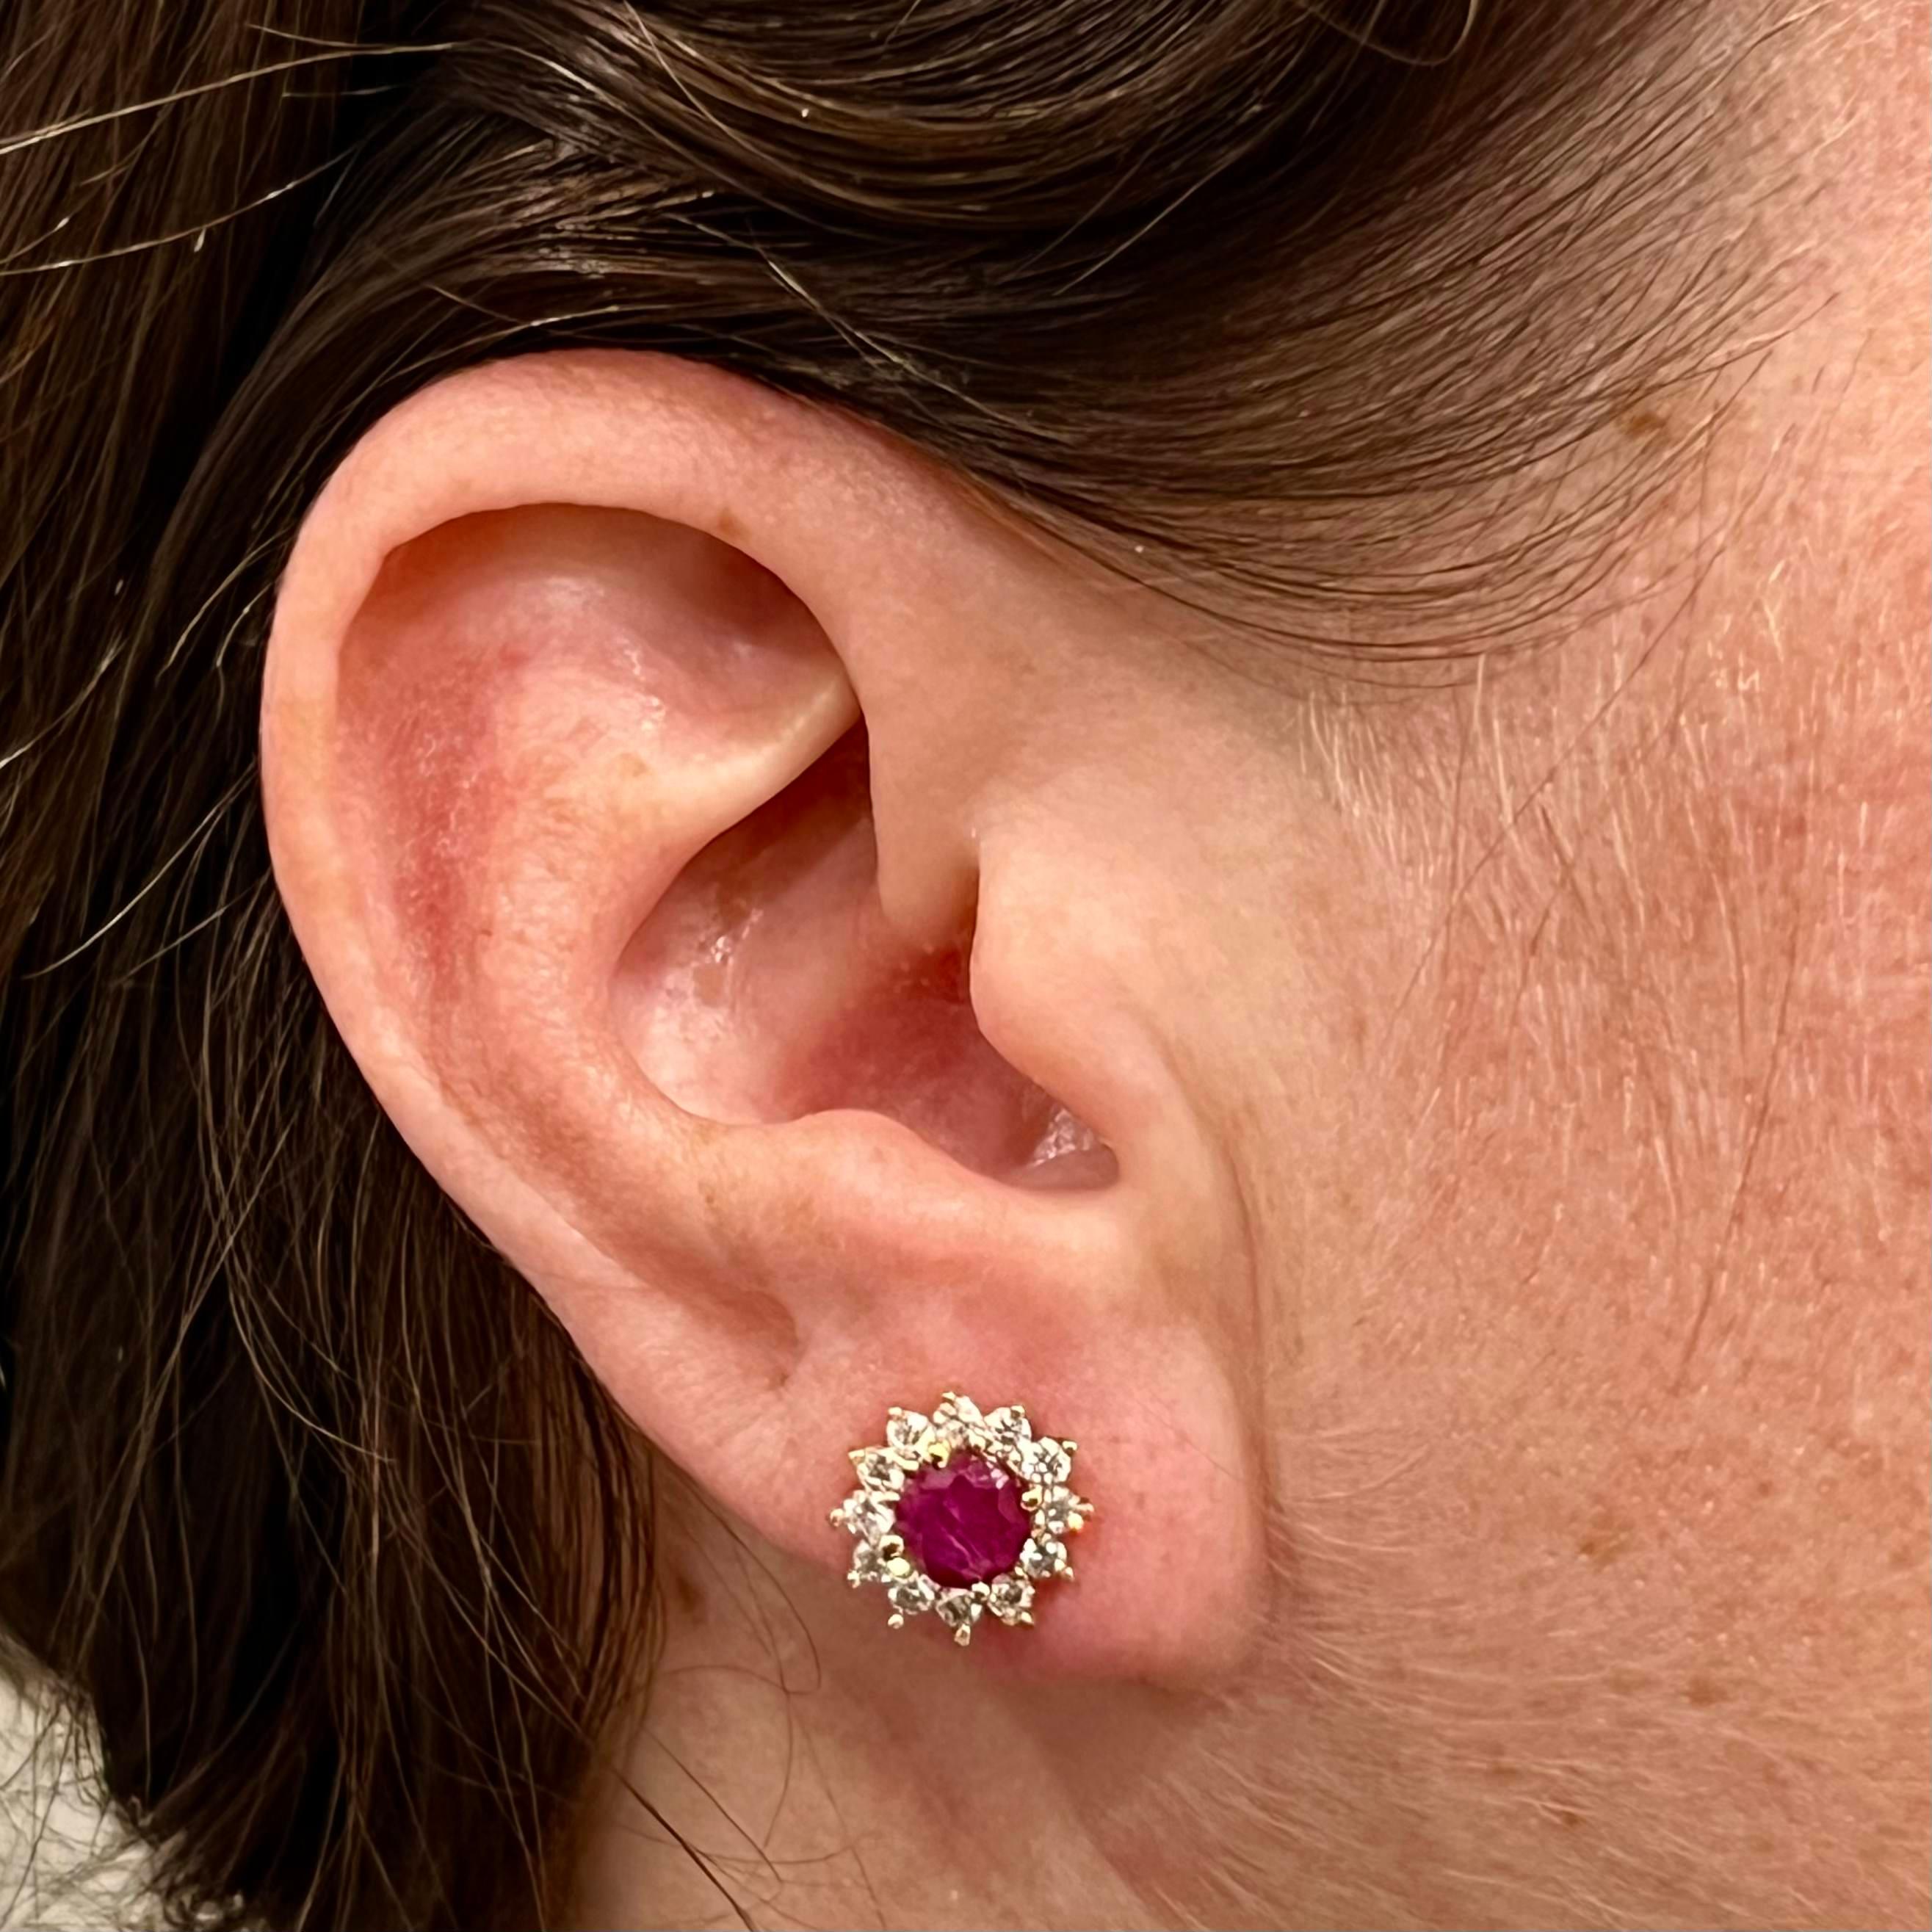 Boucles d'oreilles diamant rubis naturel or jaune 14k 2.20 TCW Certified $2,595 121103

Il s'agit d'un bijou unique, personnalisé et glamour !

Rien ne dit mieux 